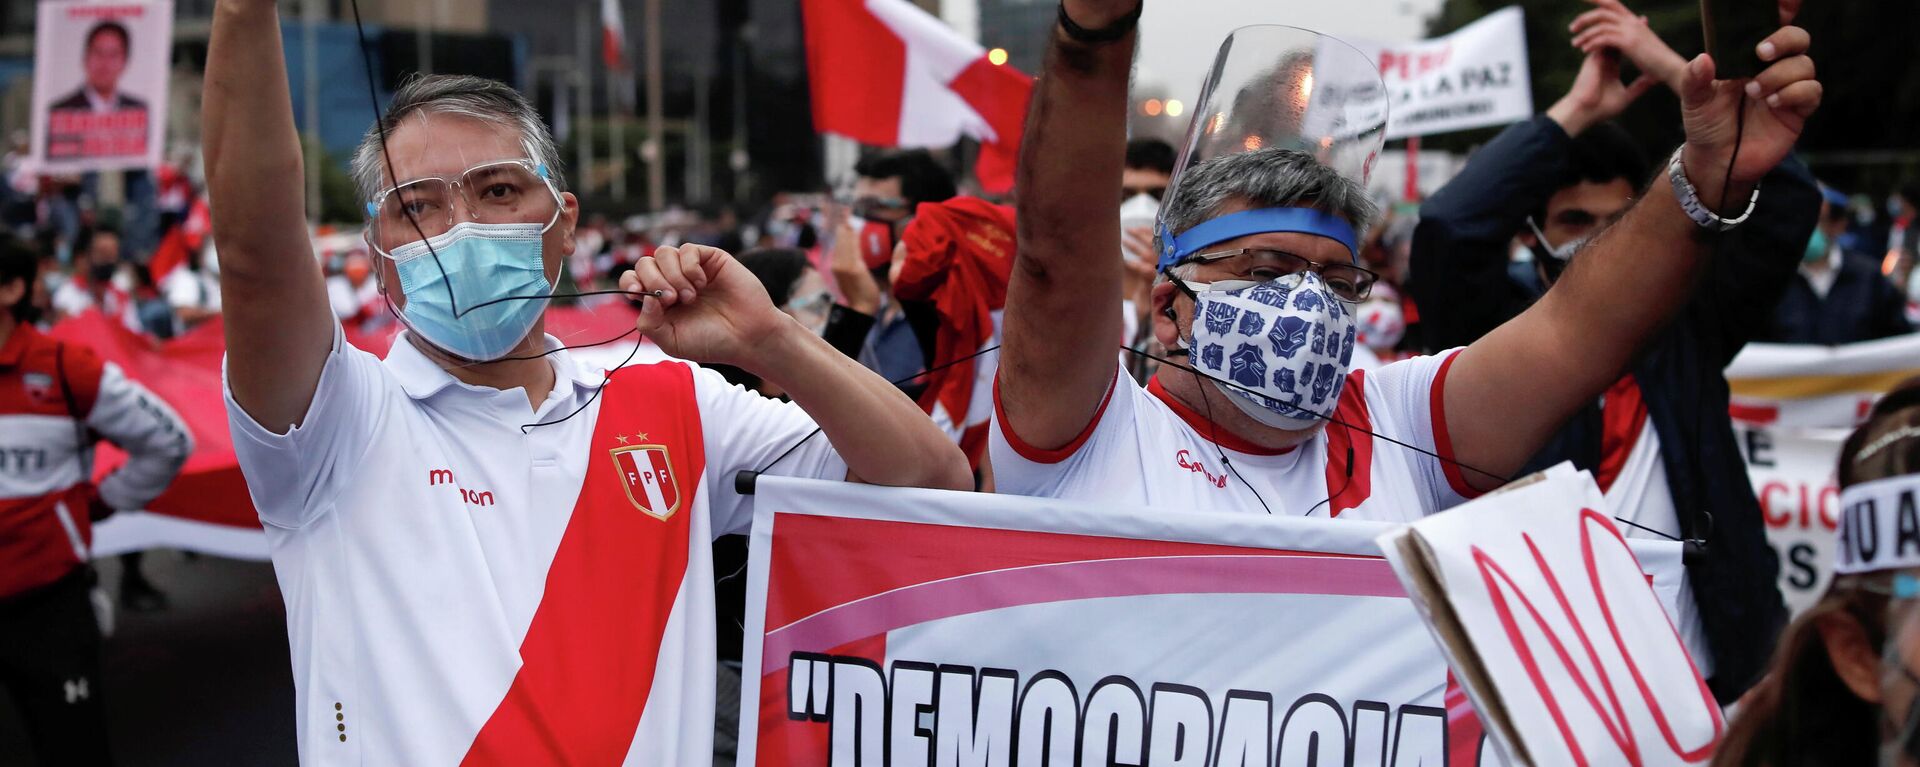 Una manifestación en vísperas de las elecciones presidenciales en Perú - Sputnik Mundo, 1920, 02.06.2021